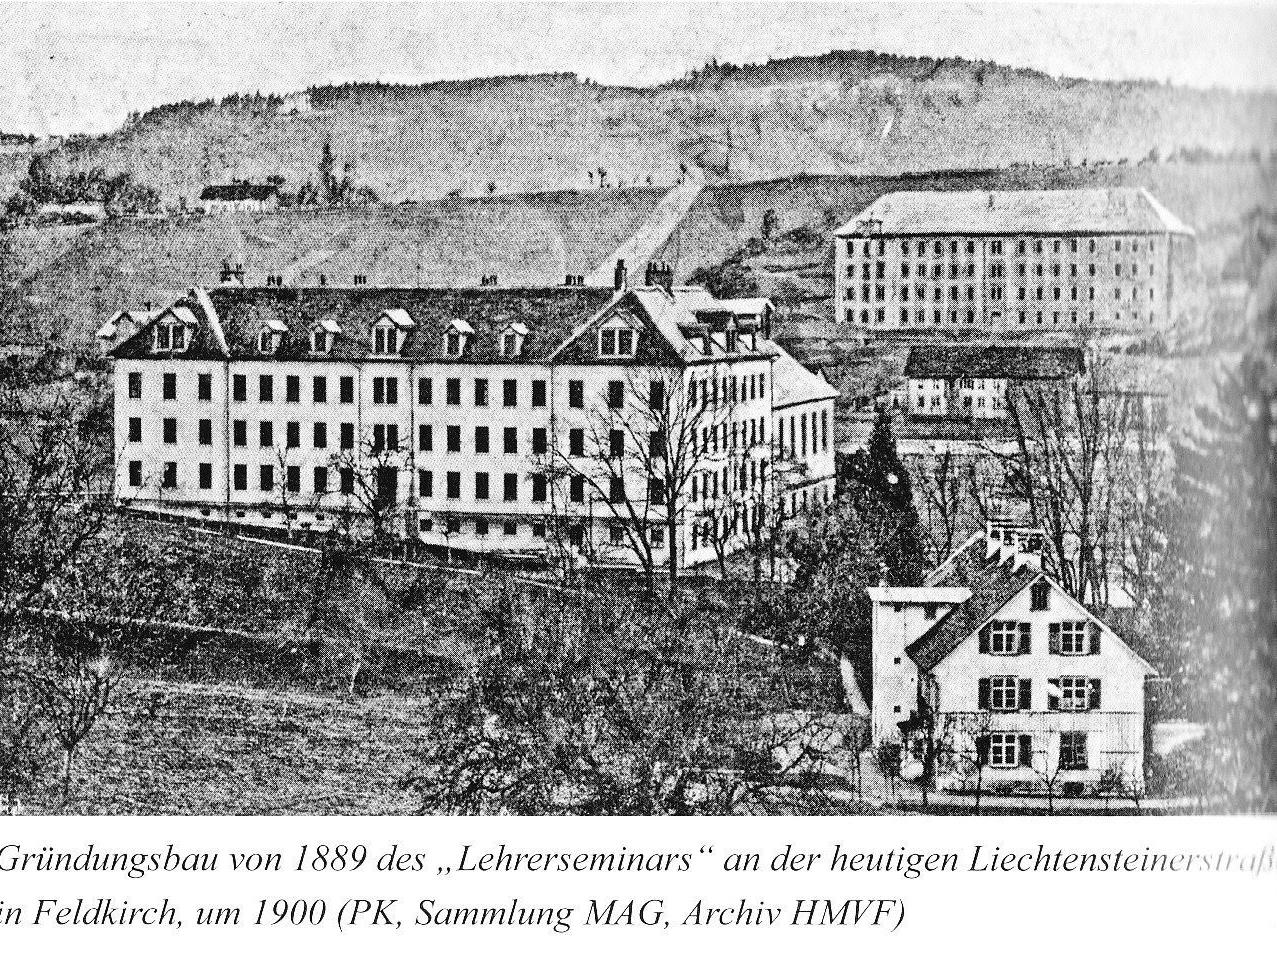 Das Lehrerseminar um 1900 in Tisis an der Liechtensteinerstraße, im Hintergrund das alte Antoniushaus